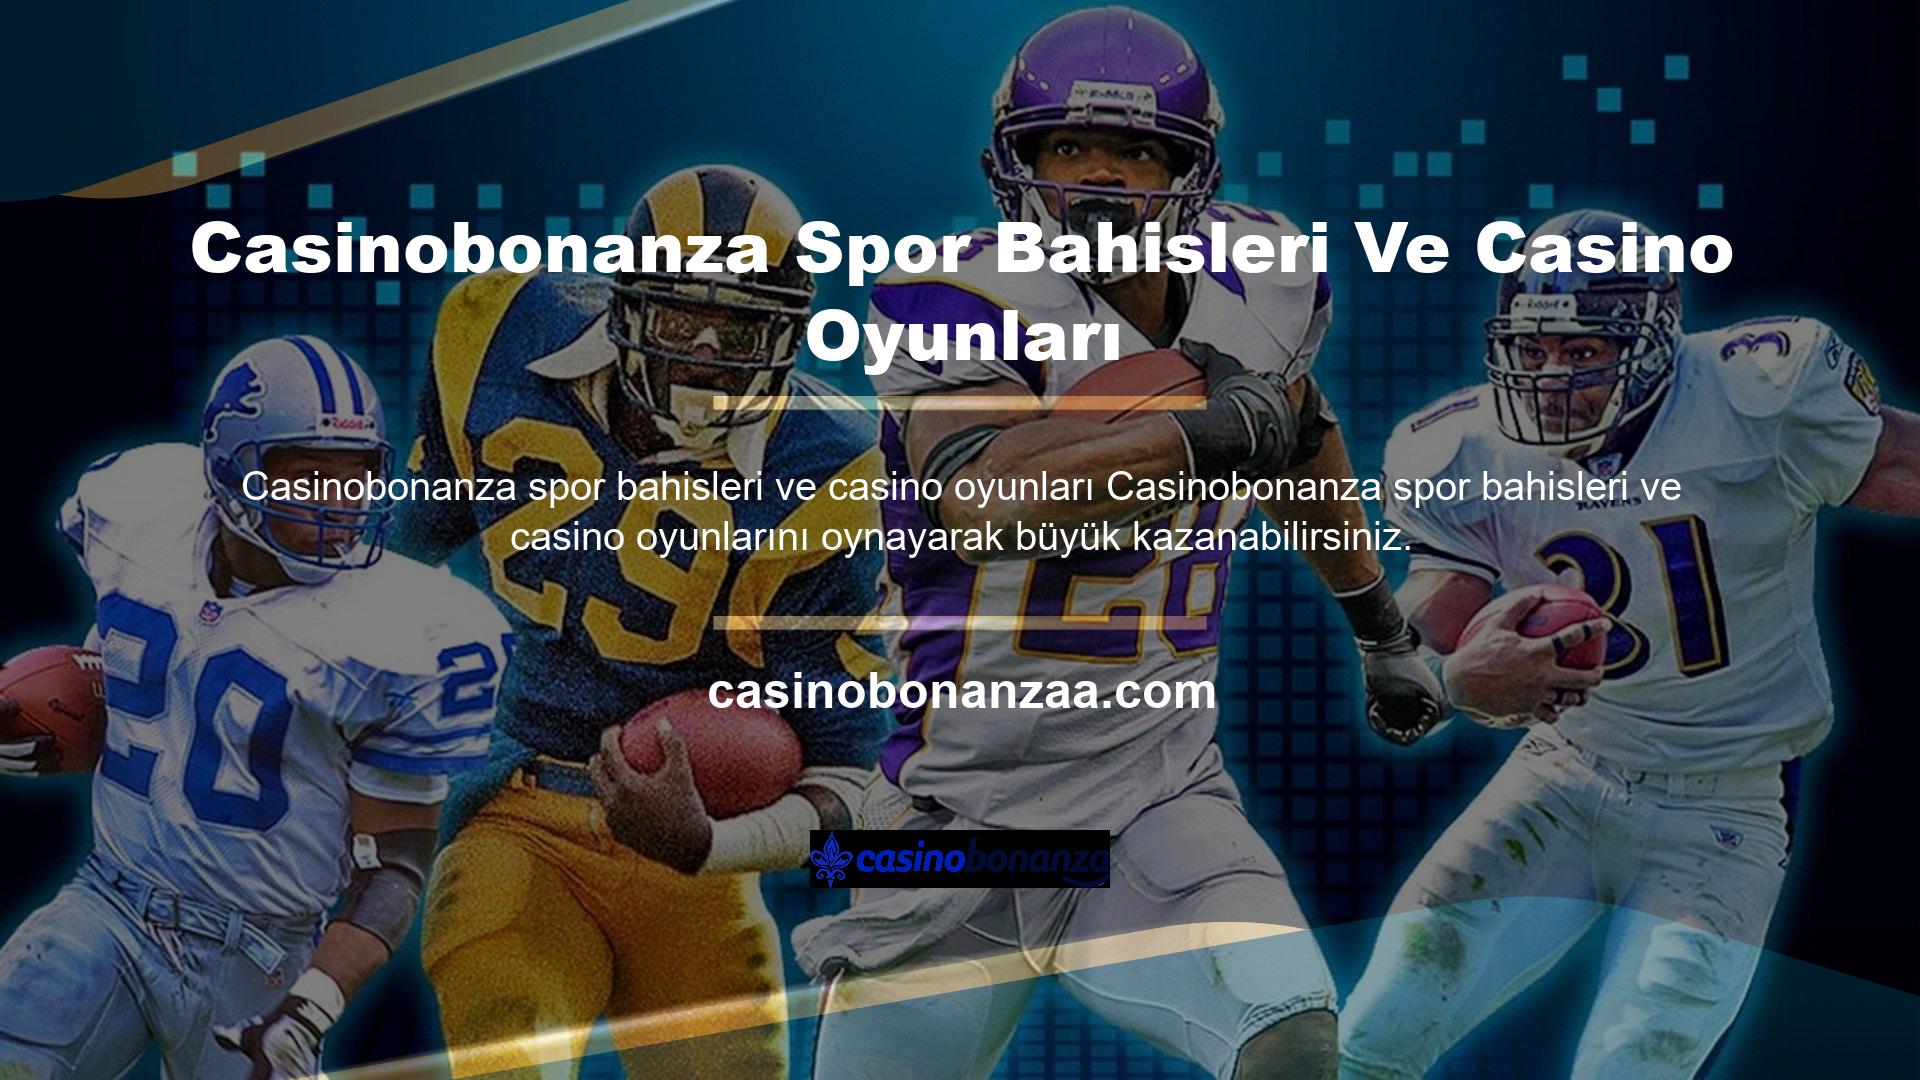 Casinobonanza web sitesi dünyadaki en güvenilir lisanslardan birine sahiptir ve kayıt için herhangi bir bahisçi kimliği veya belgeye gerek yoktur